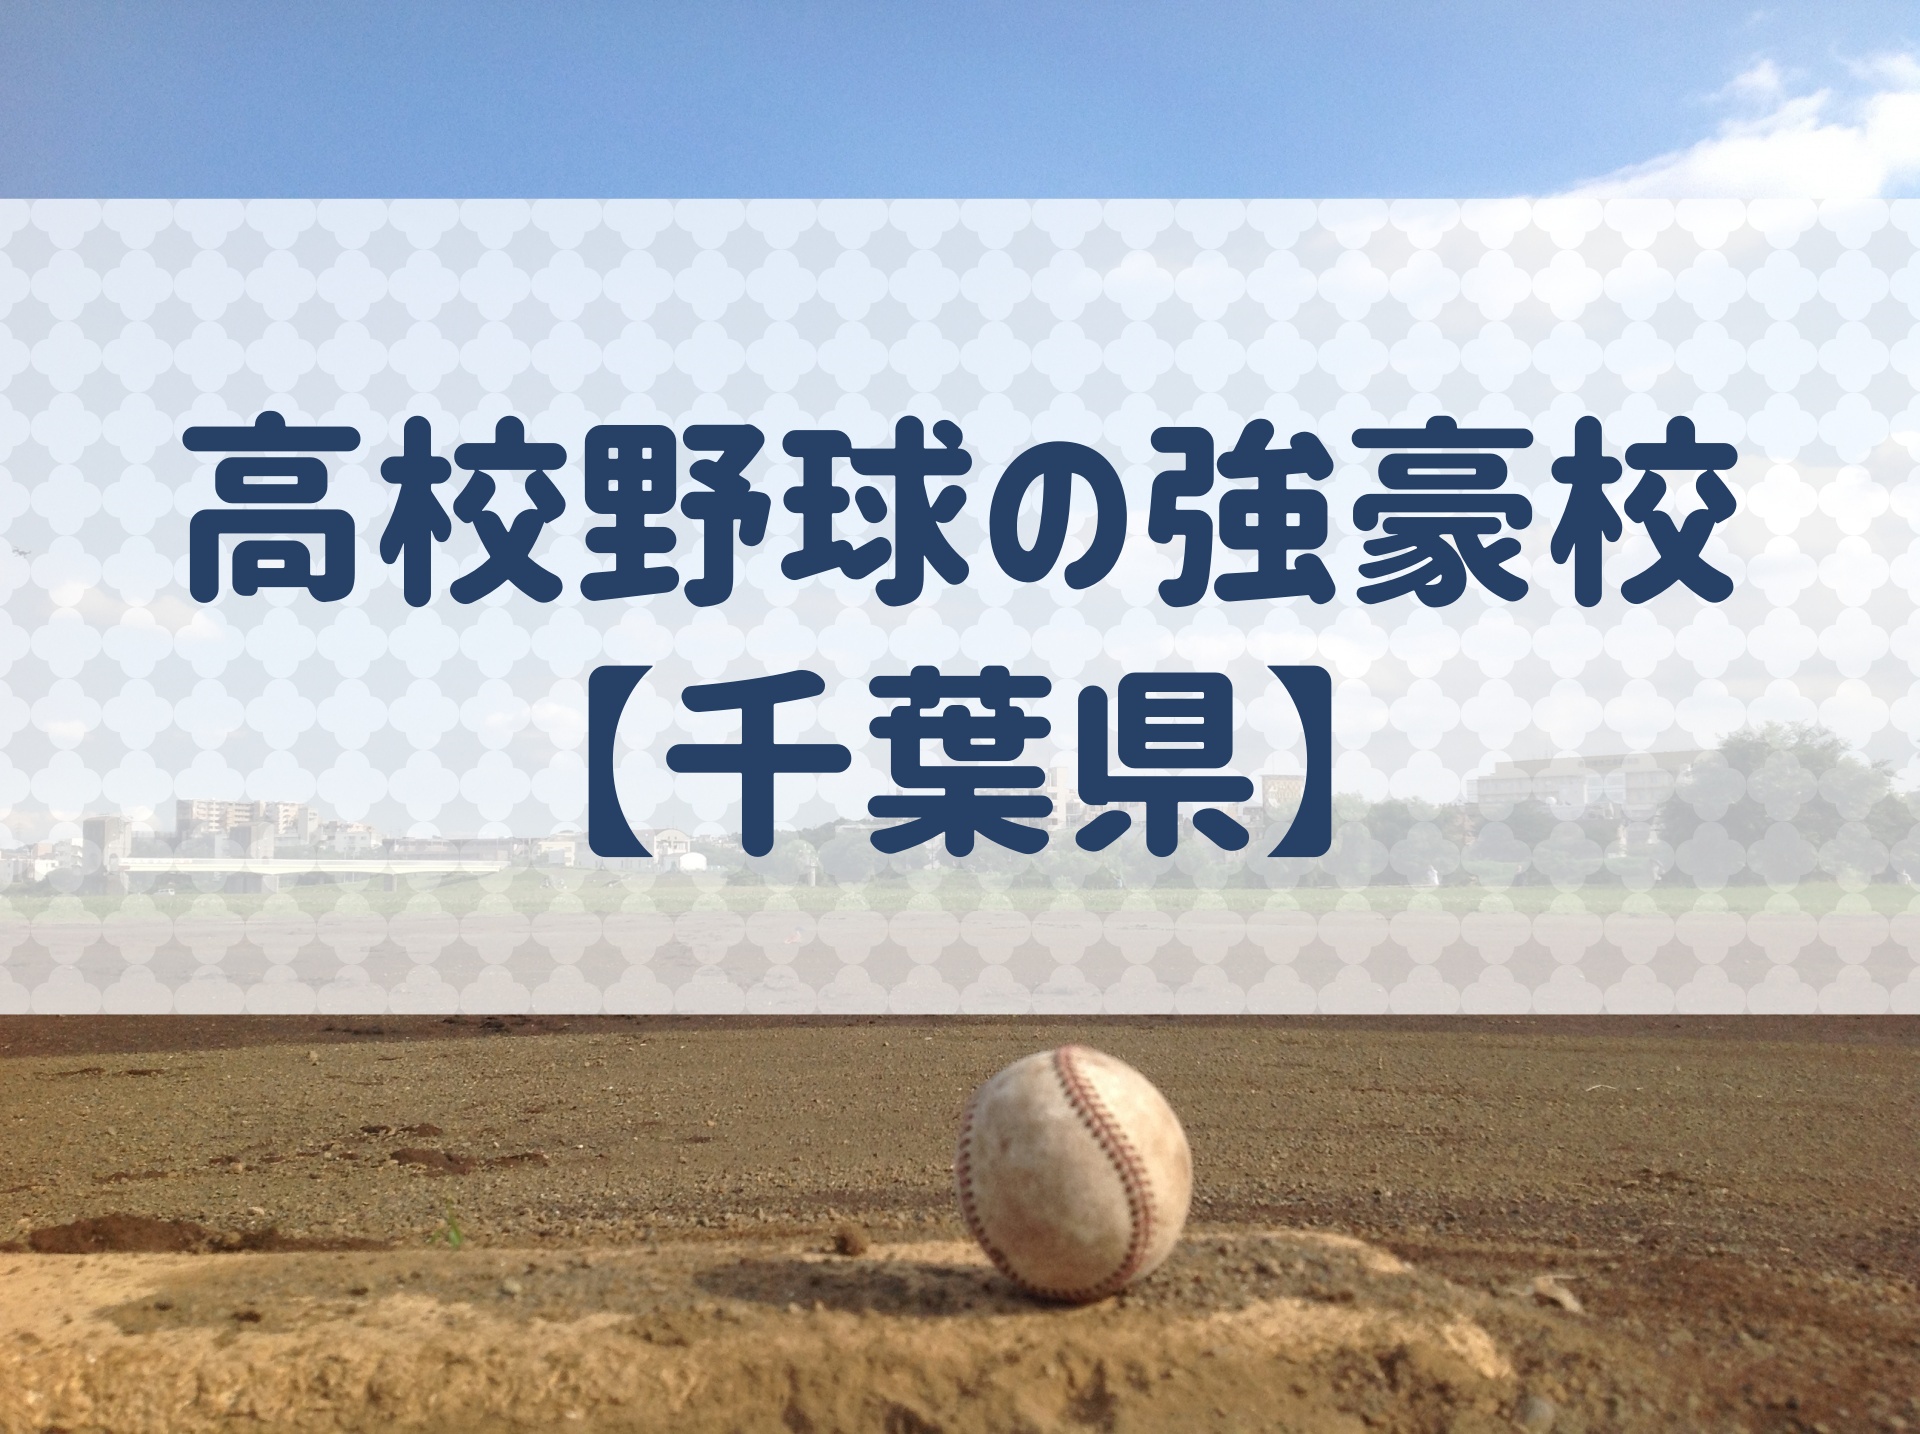 千葉県 高校野球の強豪校 特徴と実績などを紹介 野球用語 Net